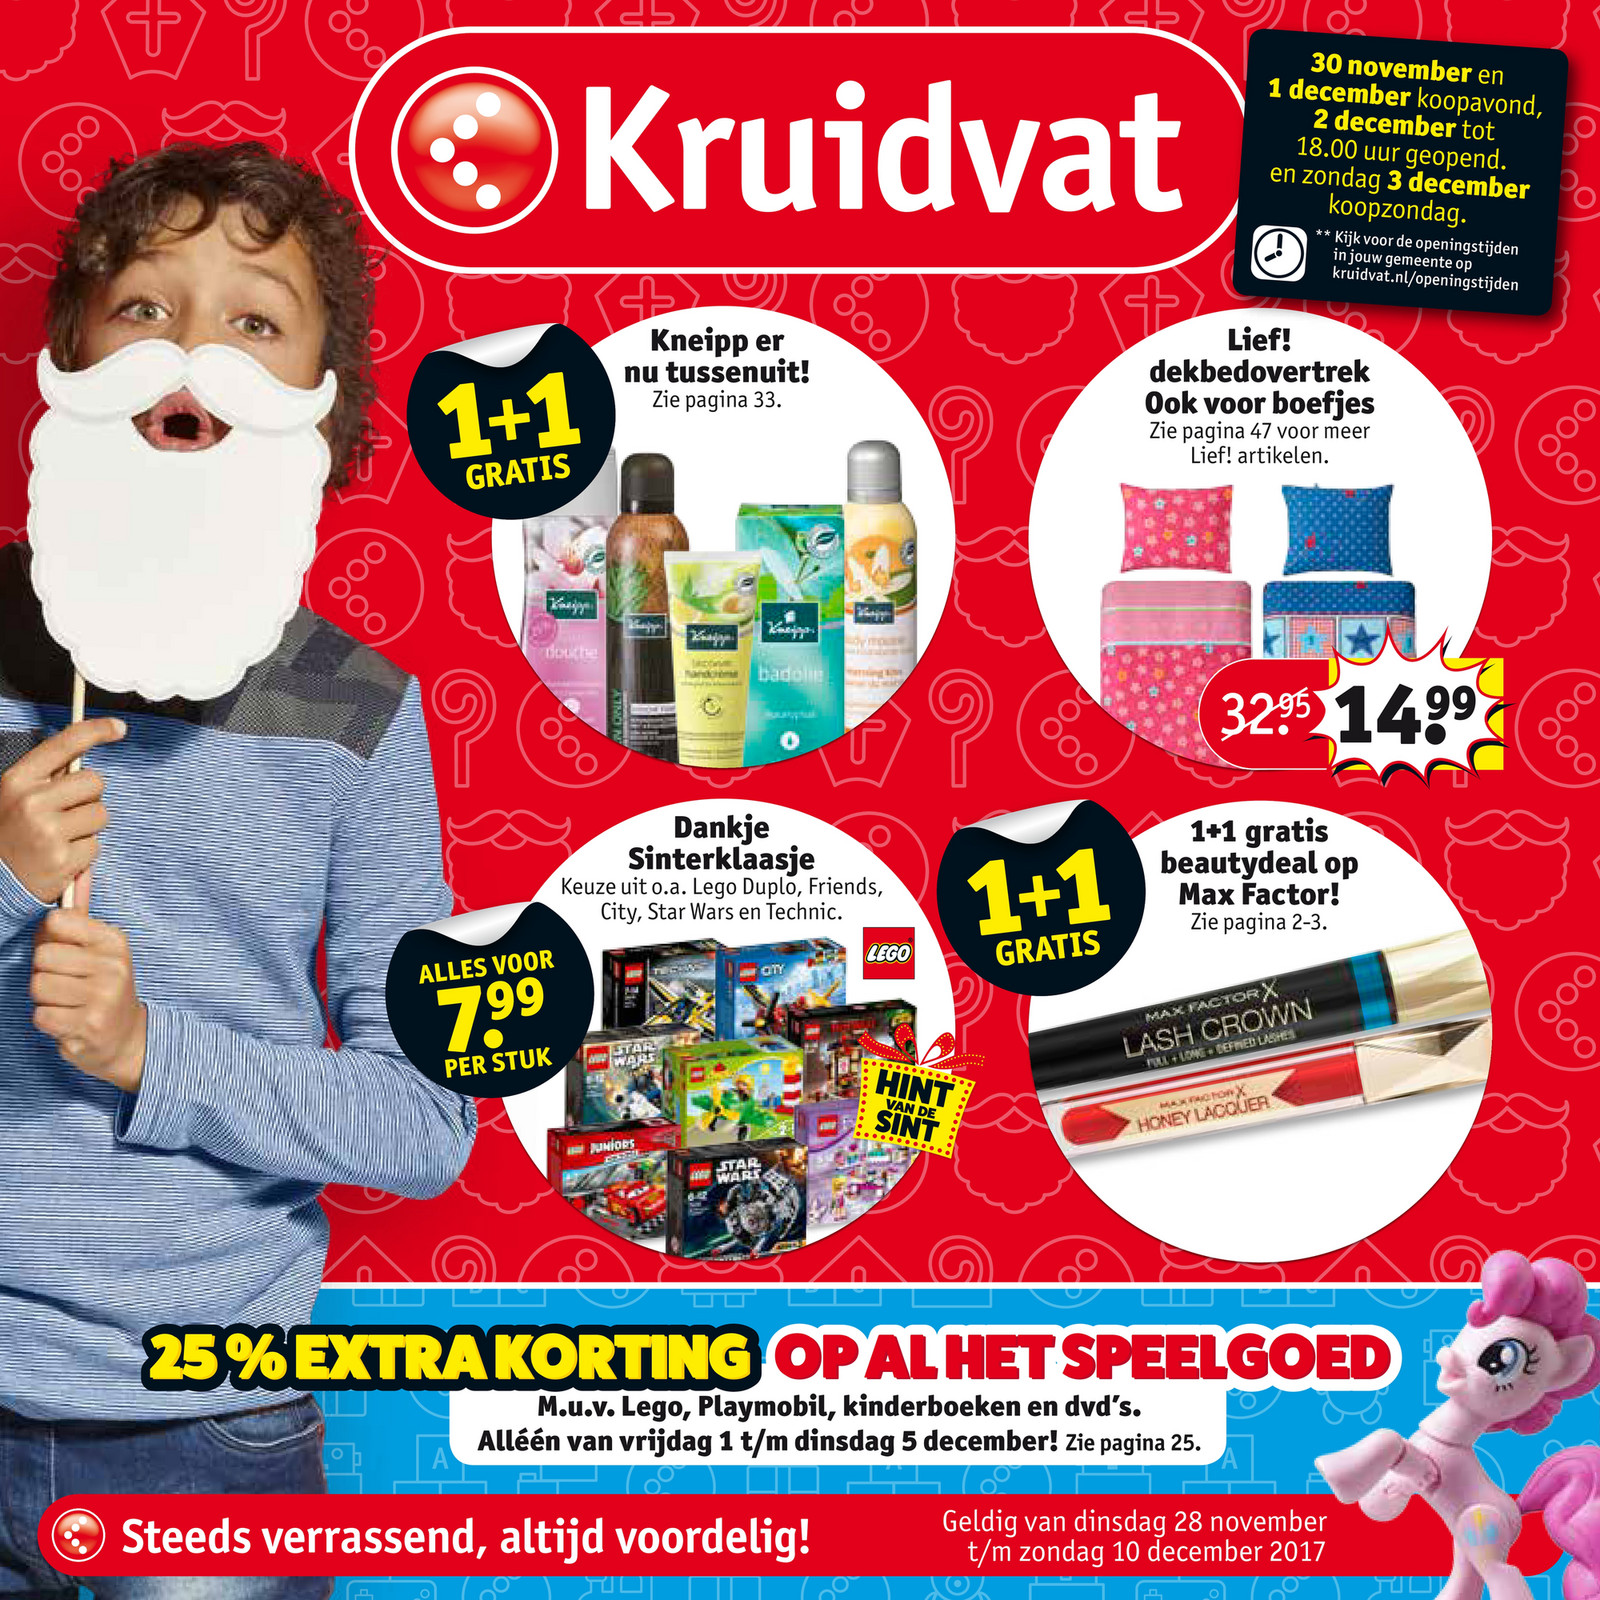 Het kantoor Leraren dag eer Kruidvat Nederland - Kruidvat folder week 48 - cm - Pagina 46-47